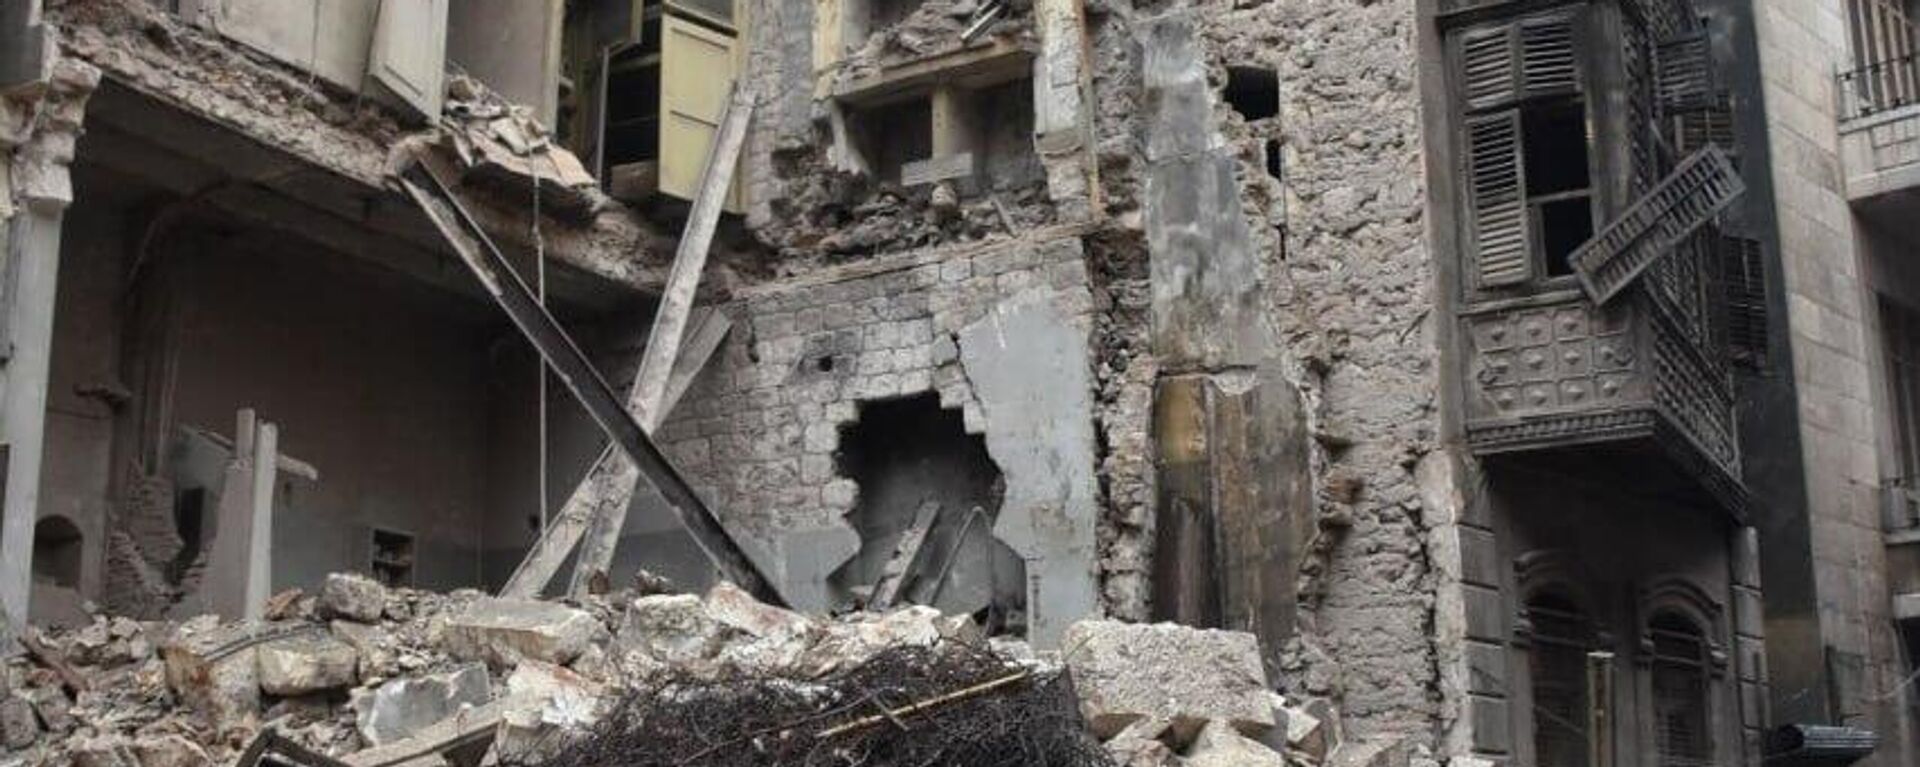 زلزال مدمر بقوة 7.8 درجة يضرب سوريا - سبوتنيك عربي, 1920, 07.02.2023